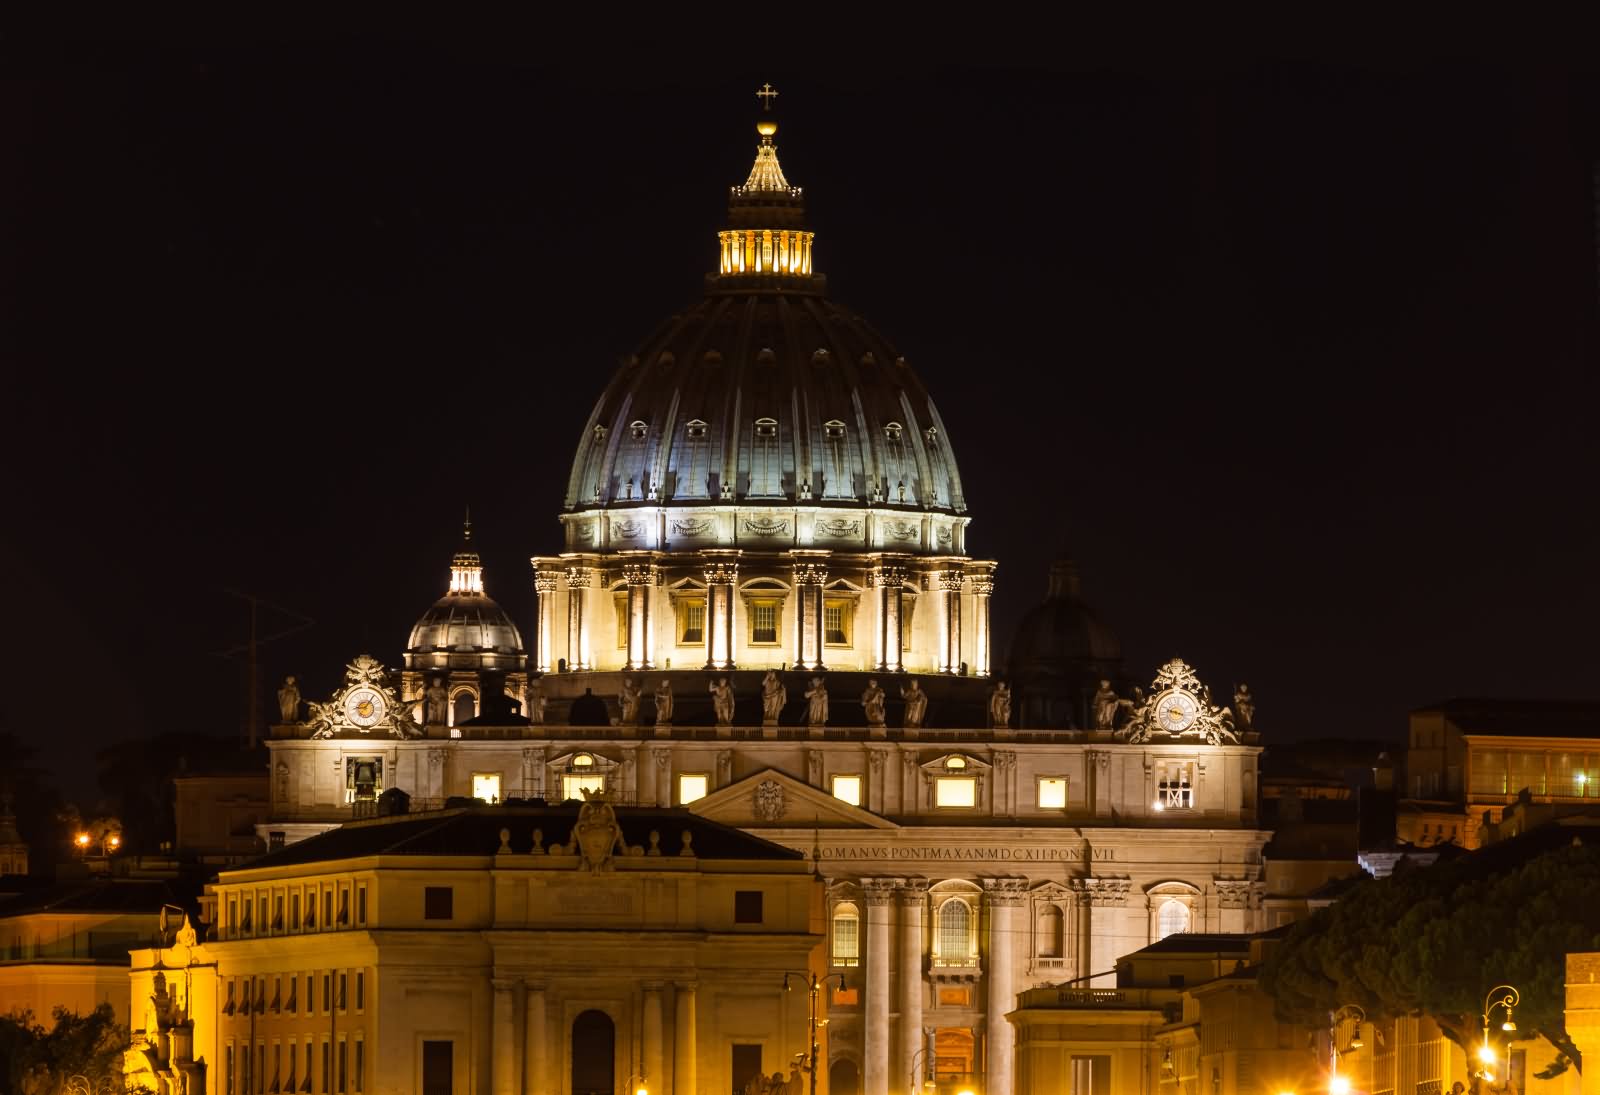 St. Peter's Basilica Night View From Umberto Bridge